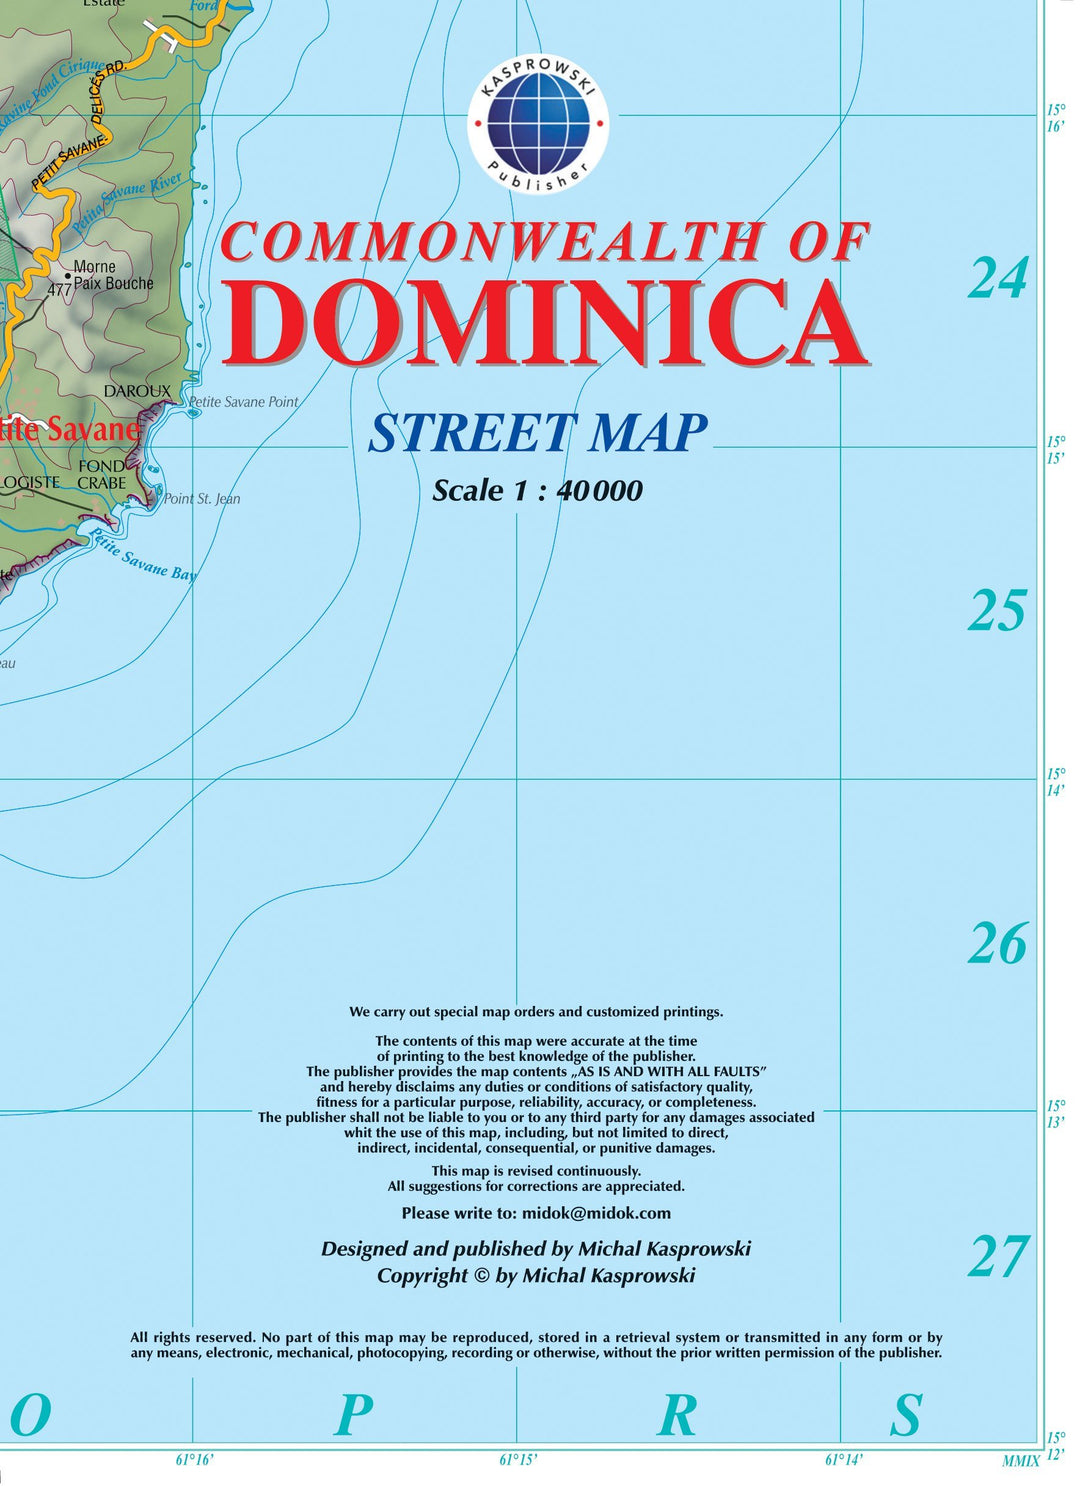 Carte topographique - Dominique | Kasprowski carte pliée Kasprowski 